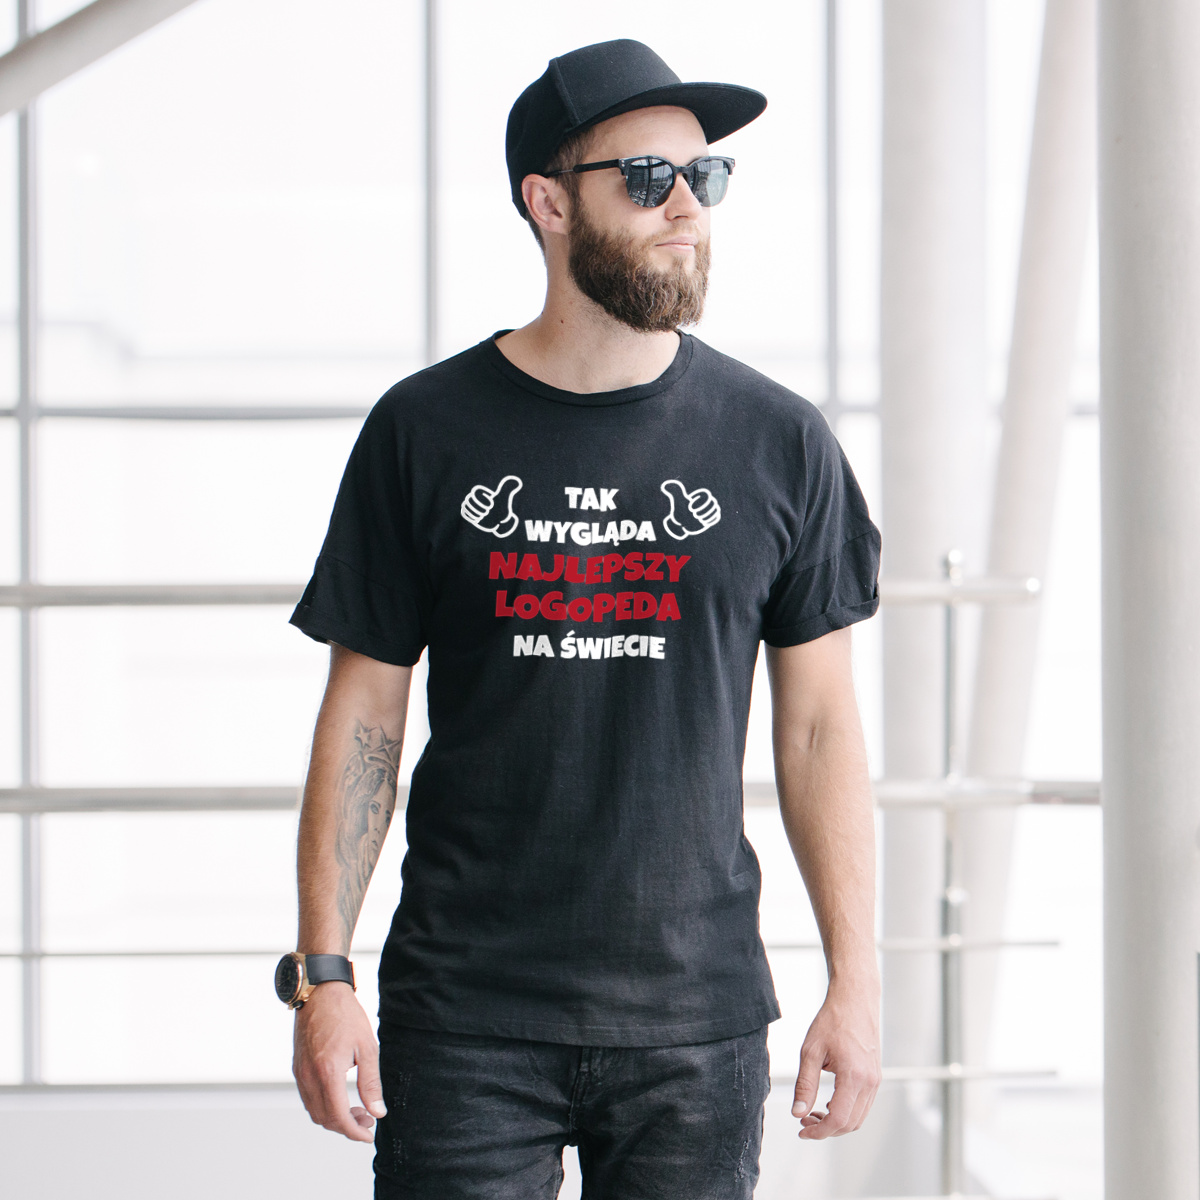 Tak Wygląda Najlepszy Logopeda Na Świecie - Męska Koszulka Czarna